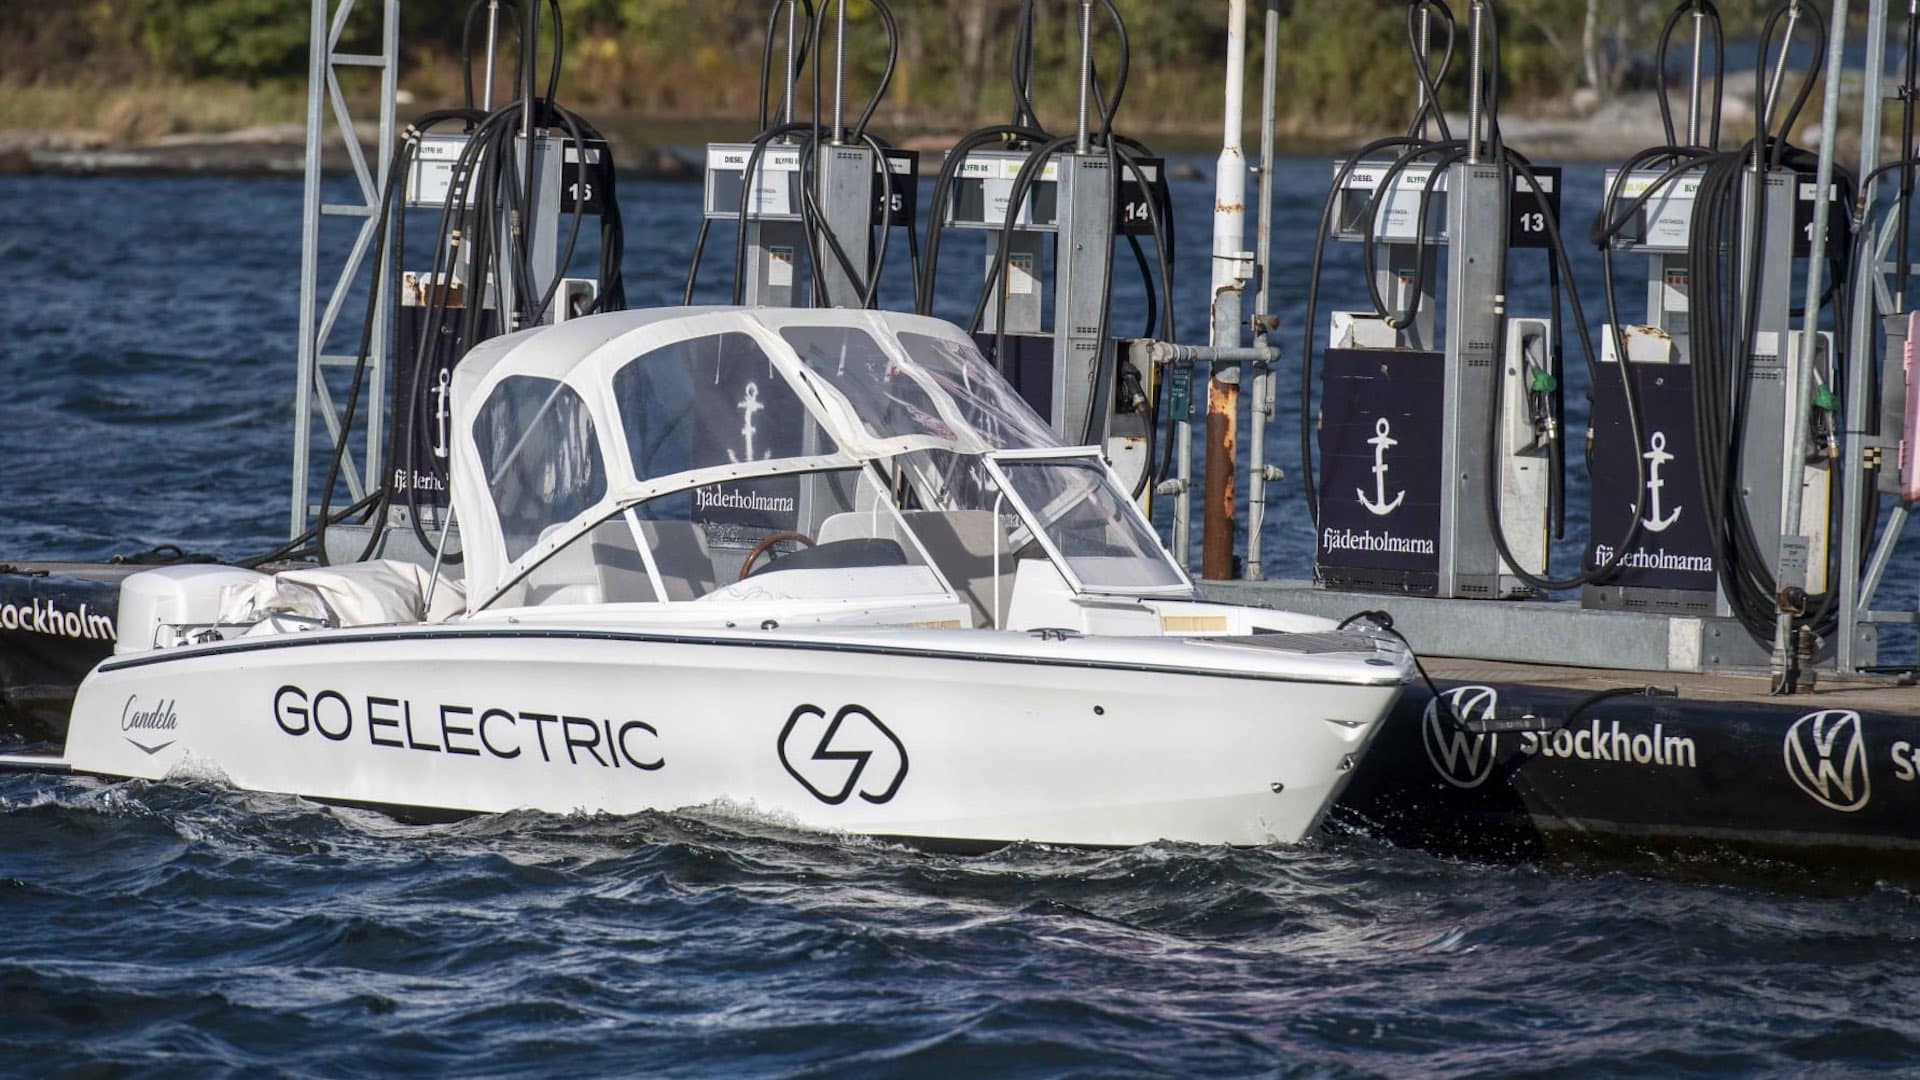 Candela Seven electric boat charging network